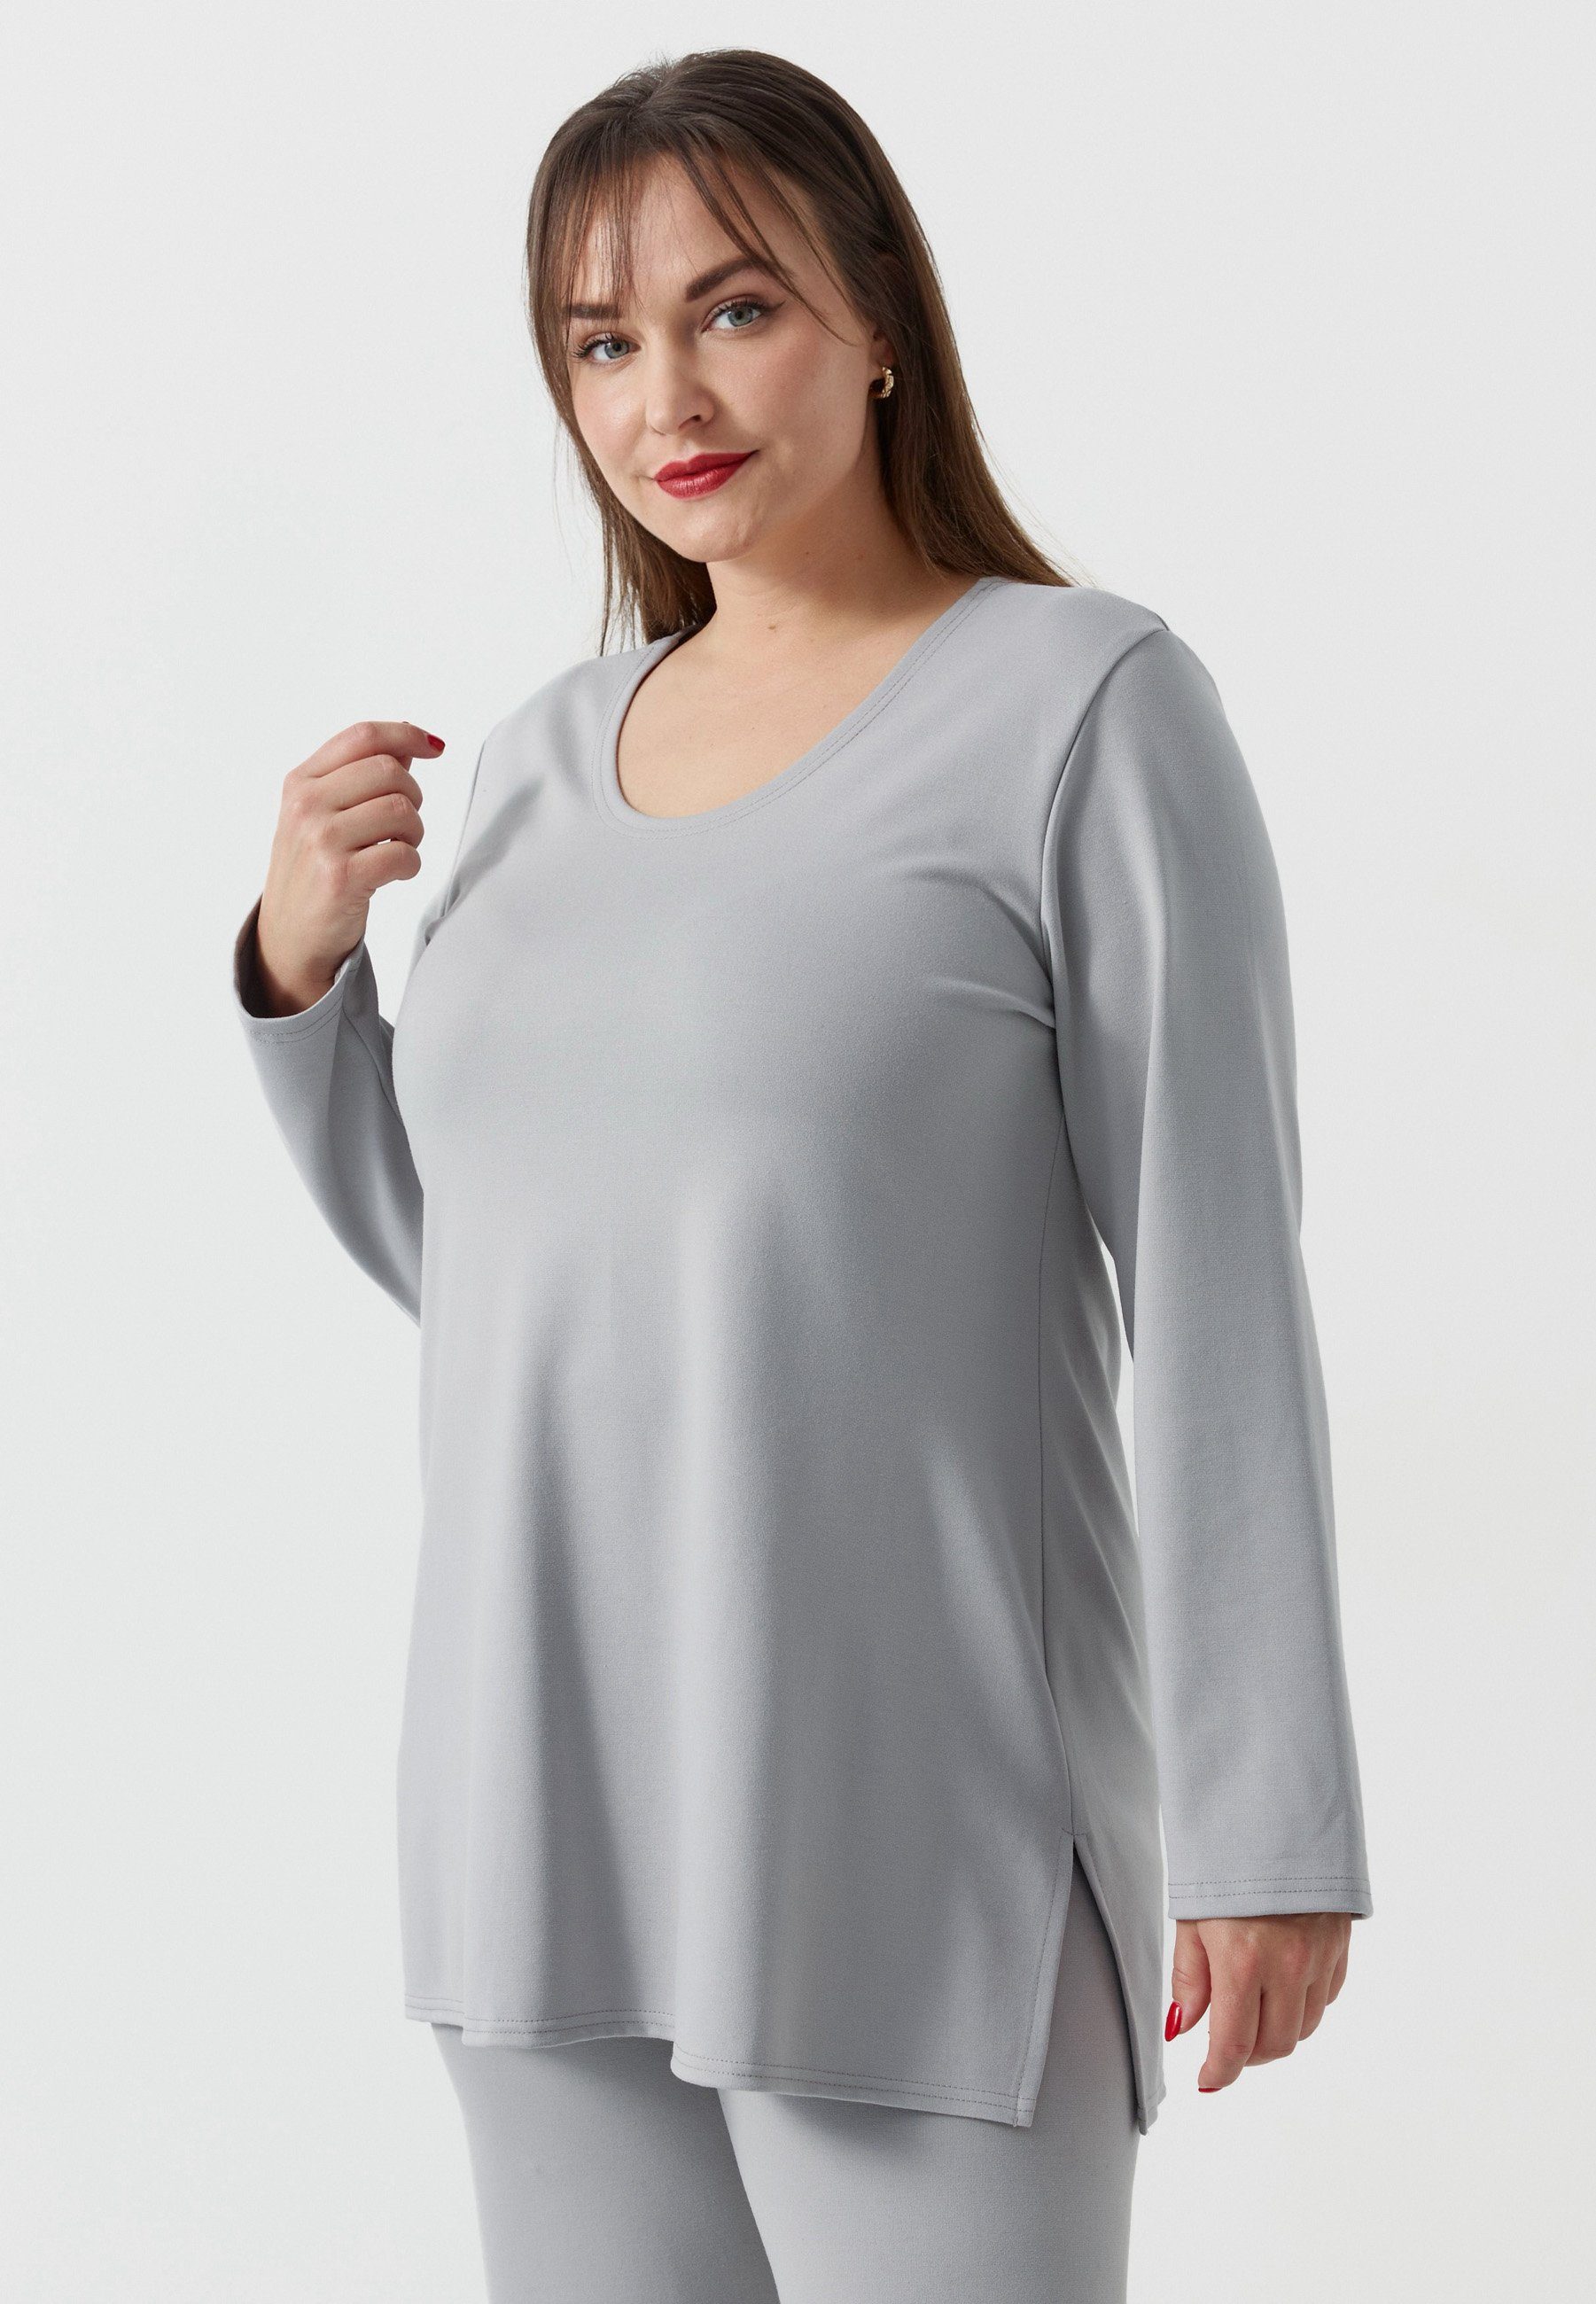 Kekoo Tunikashirt Longsleeve Shirt A-Linie mit Elasthan 'Essential' Grau | Tunikashirts